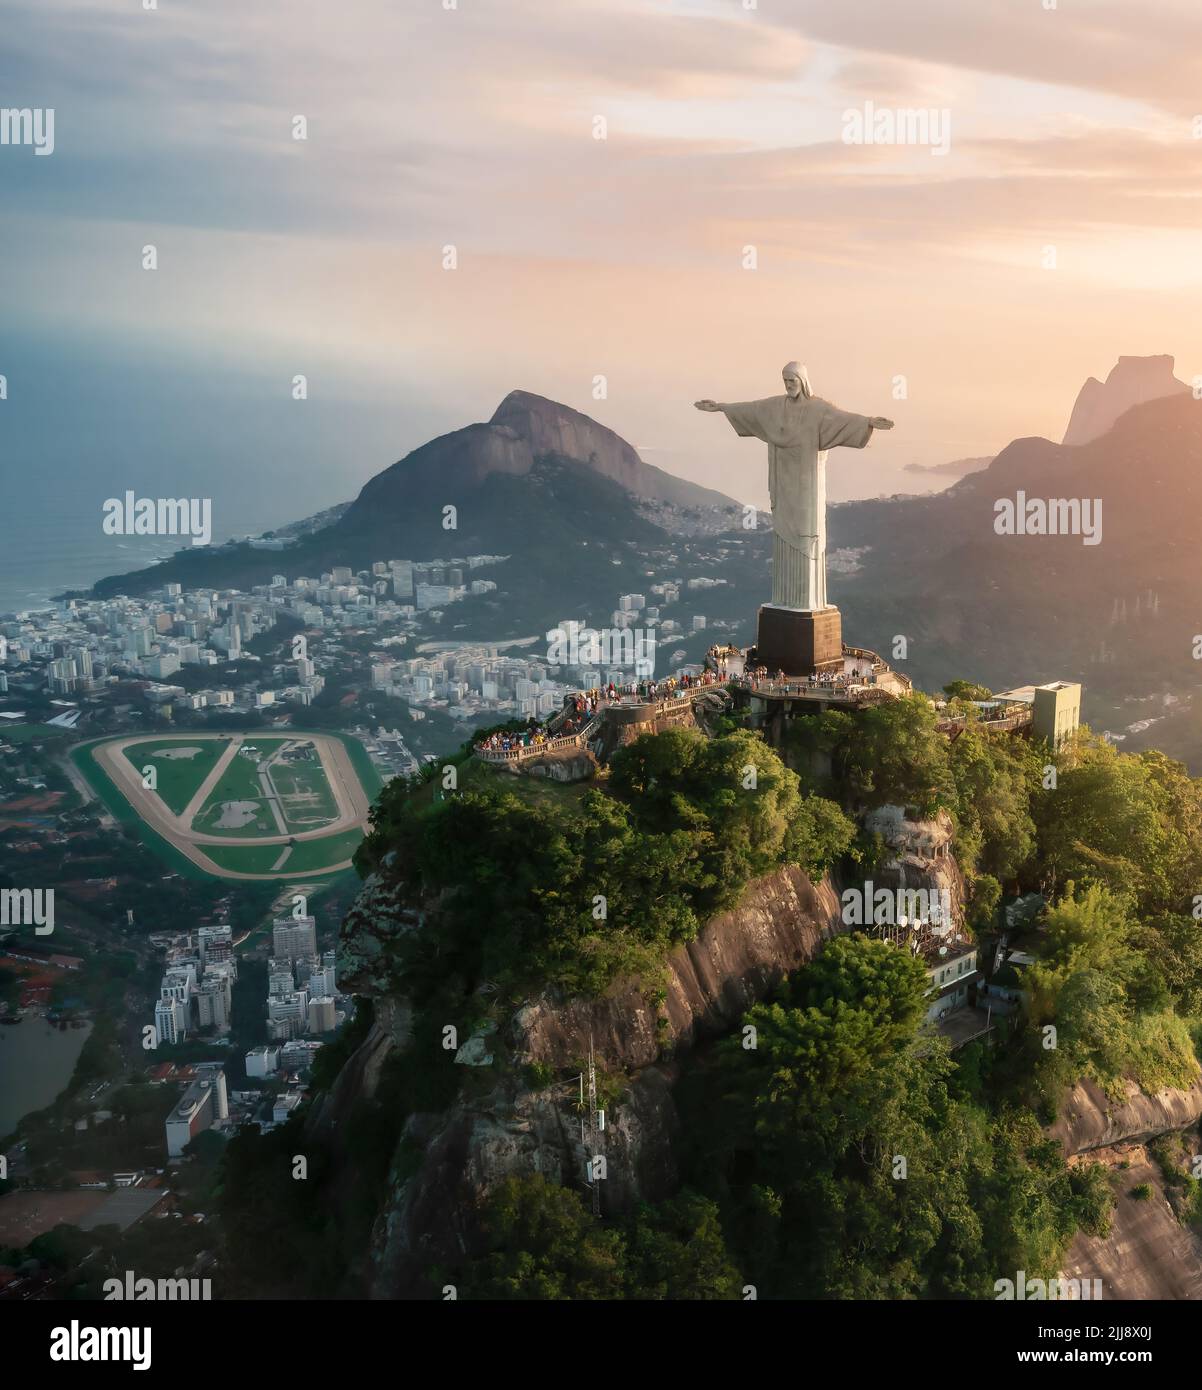 Luftaufnahme der Christusstatue und des Corcovado-Berges mit Hipodromo da Gavea und dem Dois Irmaos-Hügel bei Sonnenuntergang - Rio de Janeiro, Brasilien Stockfoto